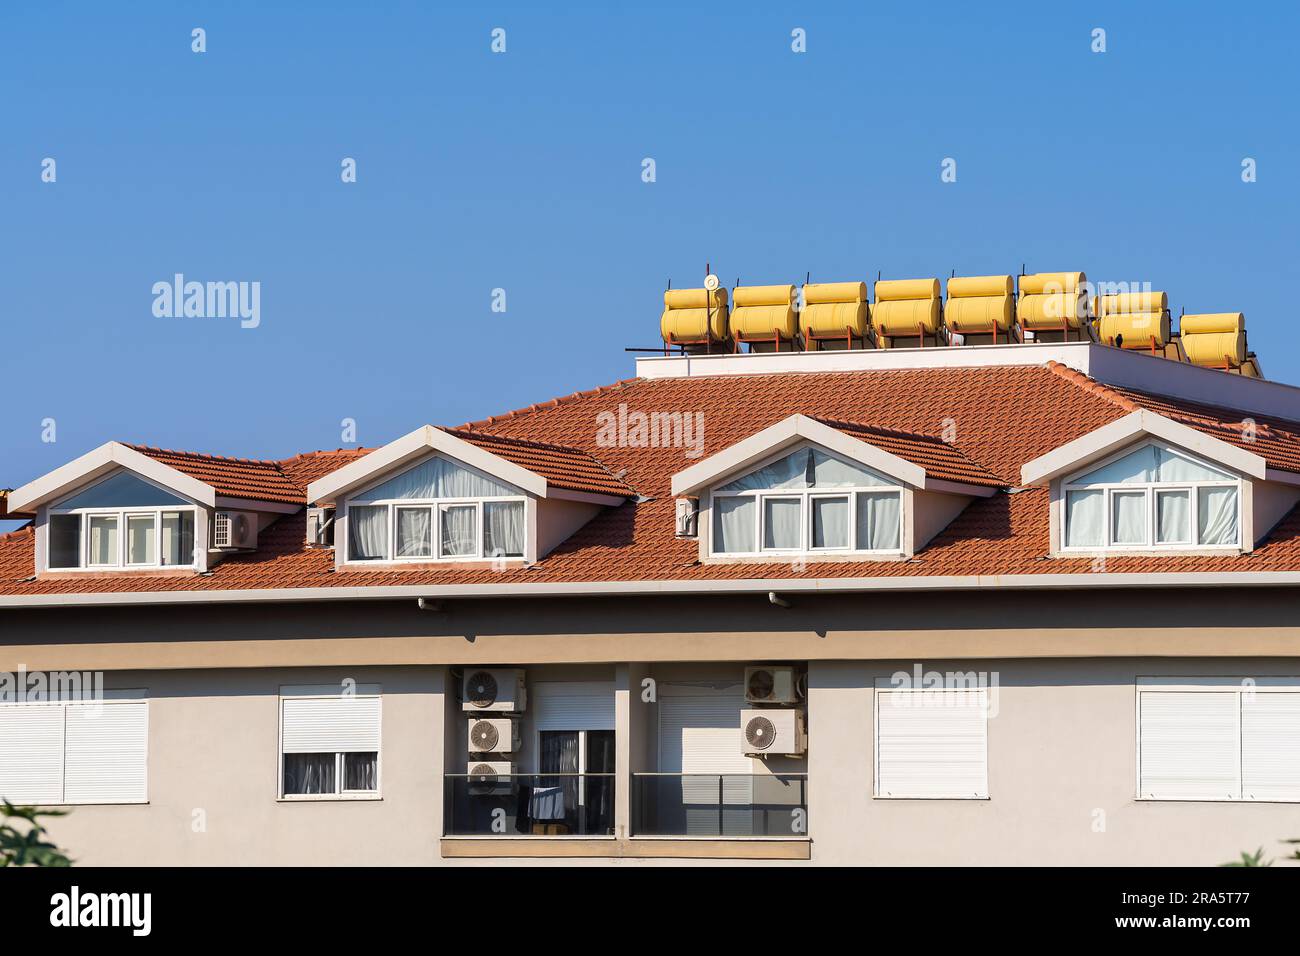 Das Dach eines Mehrfamilienhauses mit installierten Solar-Warmwasserbereitern. Der Himmel ist klar. Stockfoto